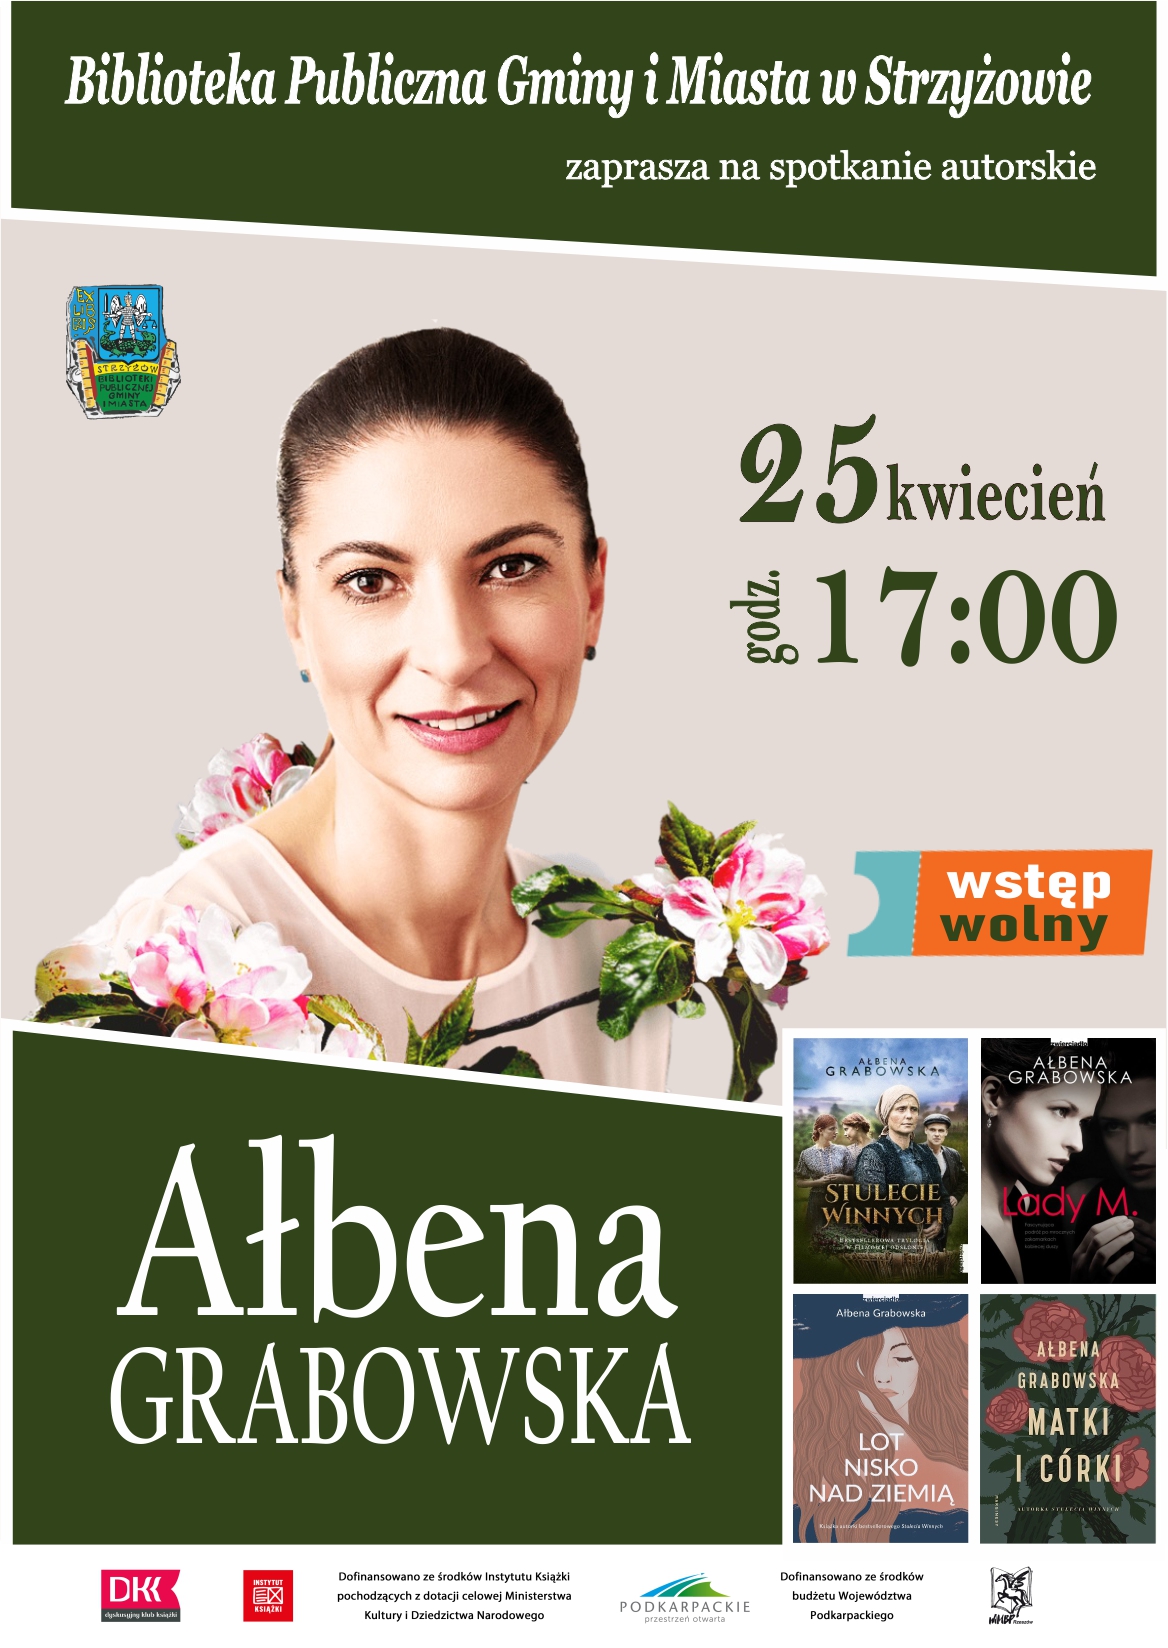 Spotkanie autorskie z Ałbeną Grabowską 